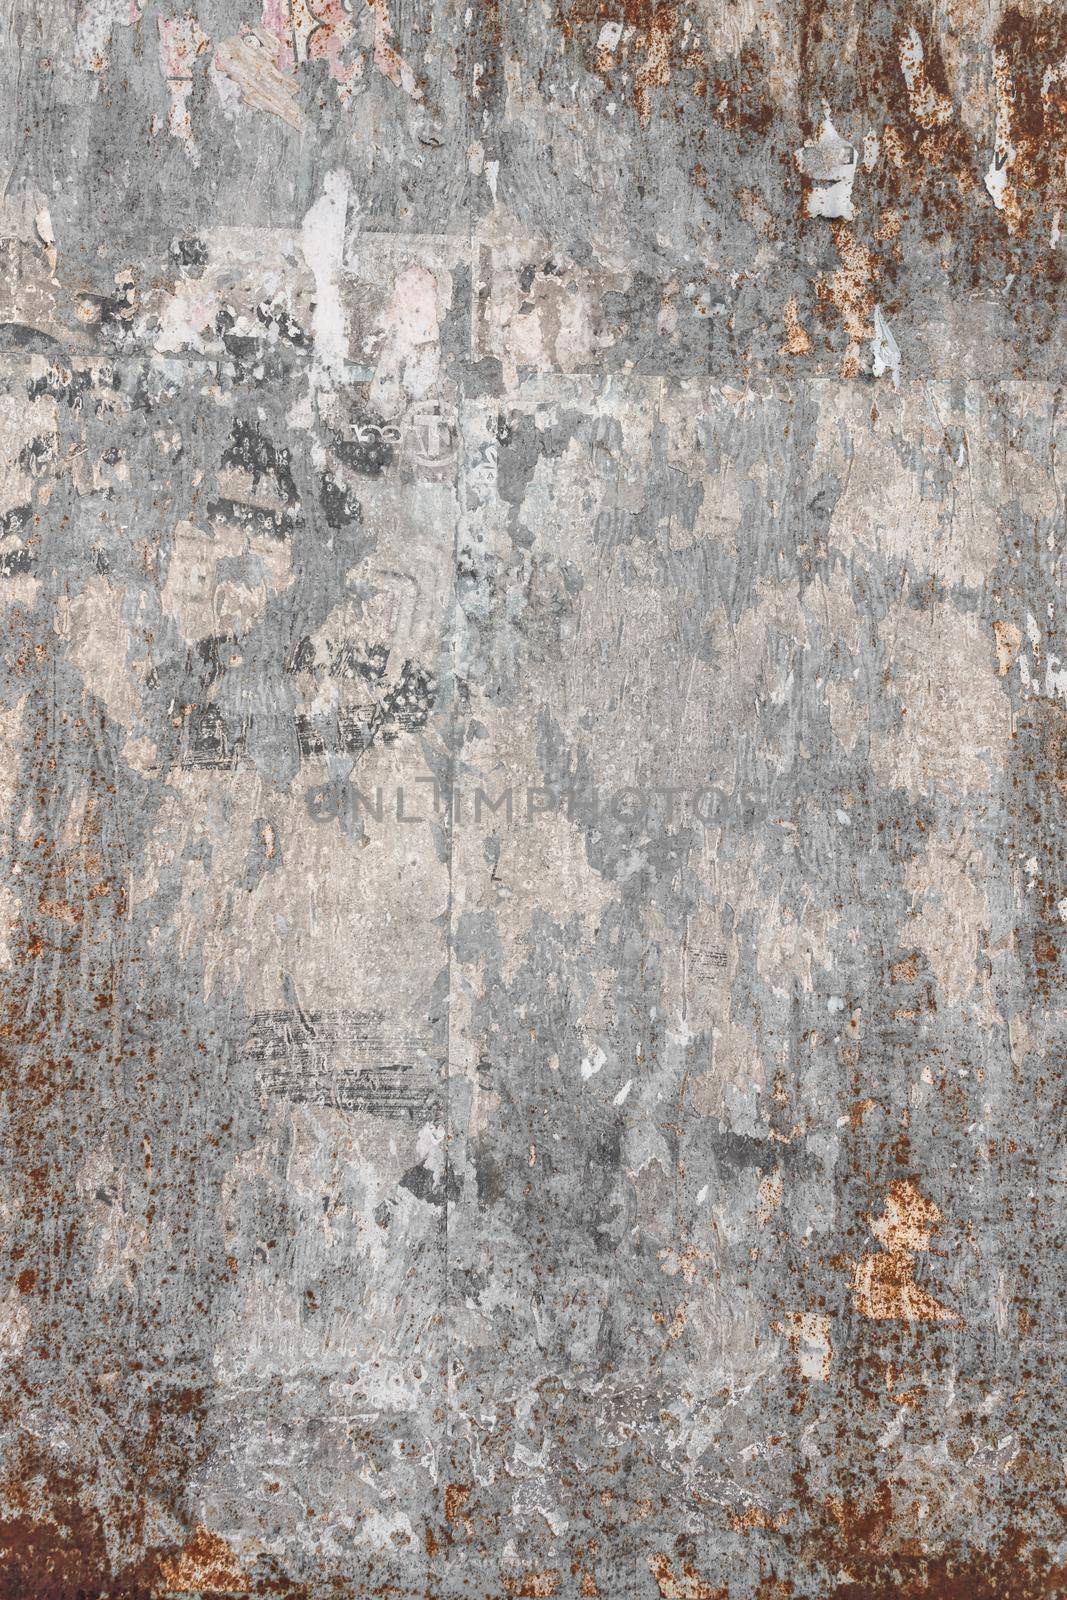 Rusty metal texture by germanopoli